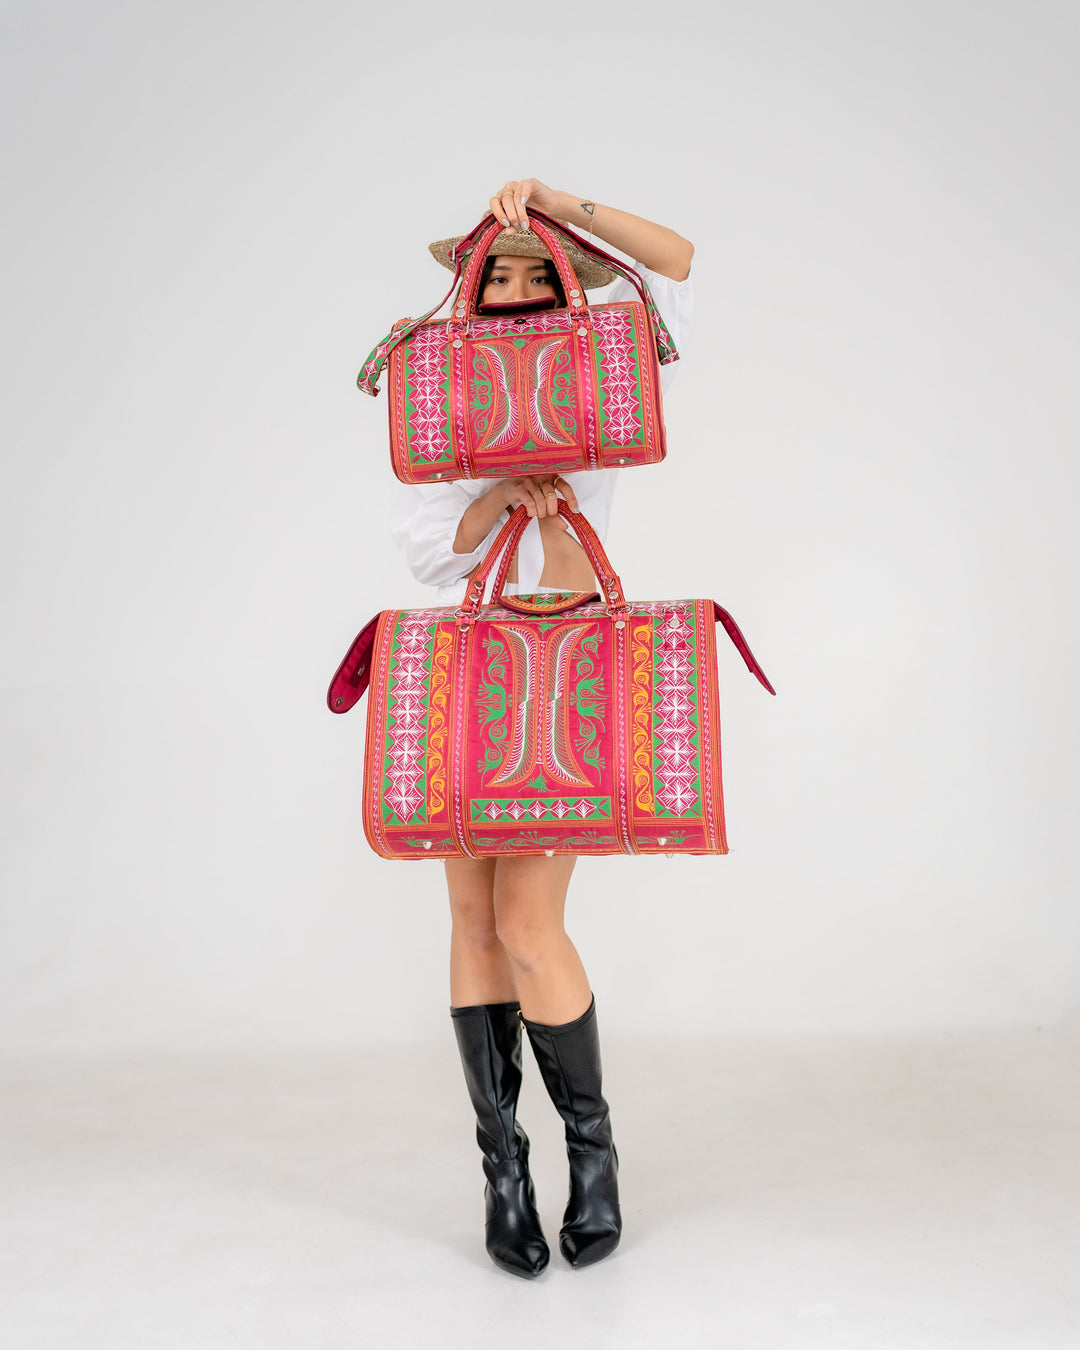 Mini Weekender Bag by Banda Bags